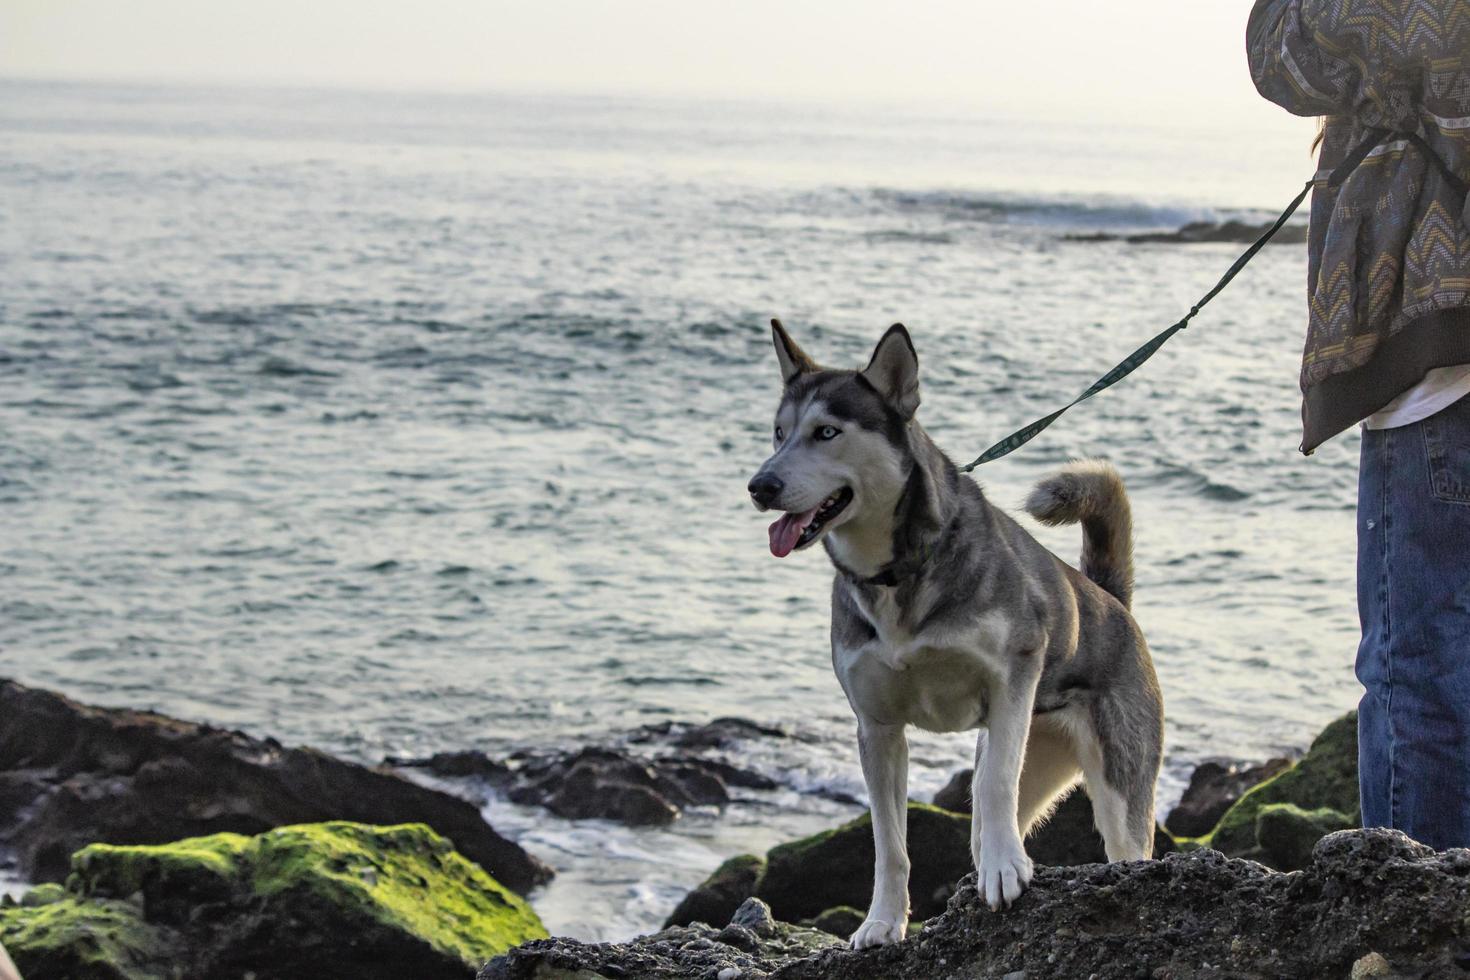 perro en la playa - newport ca 2018 foto